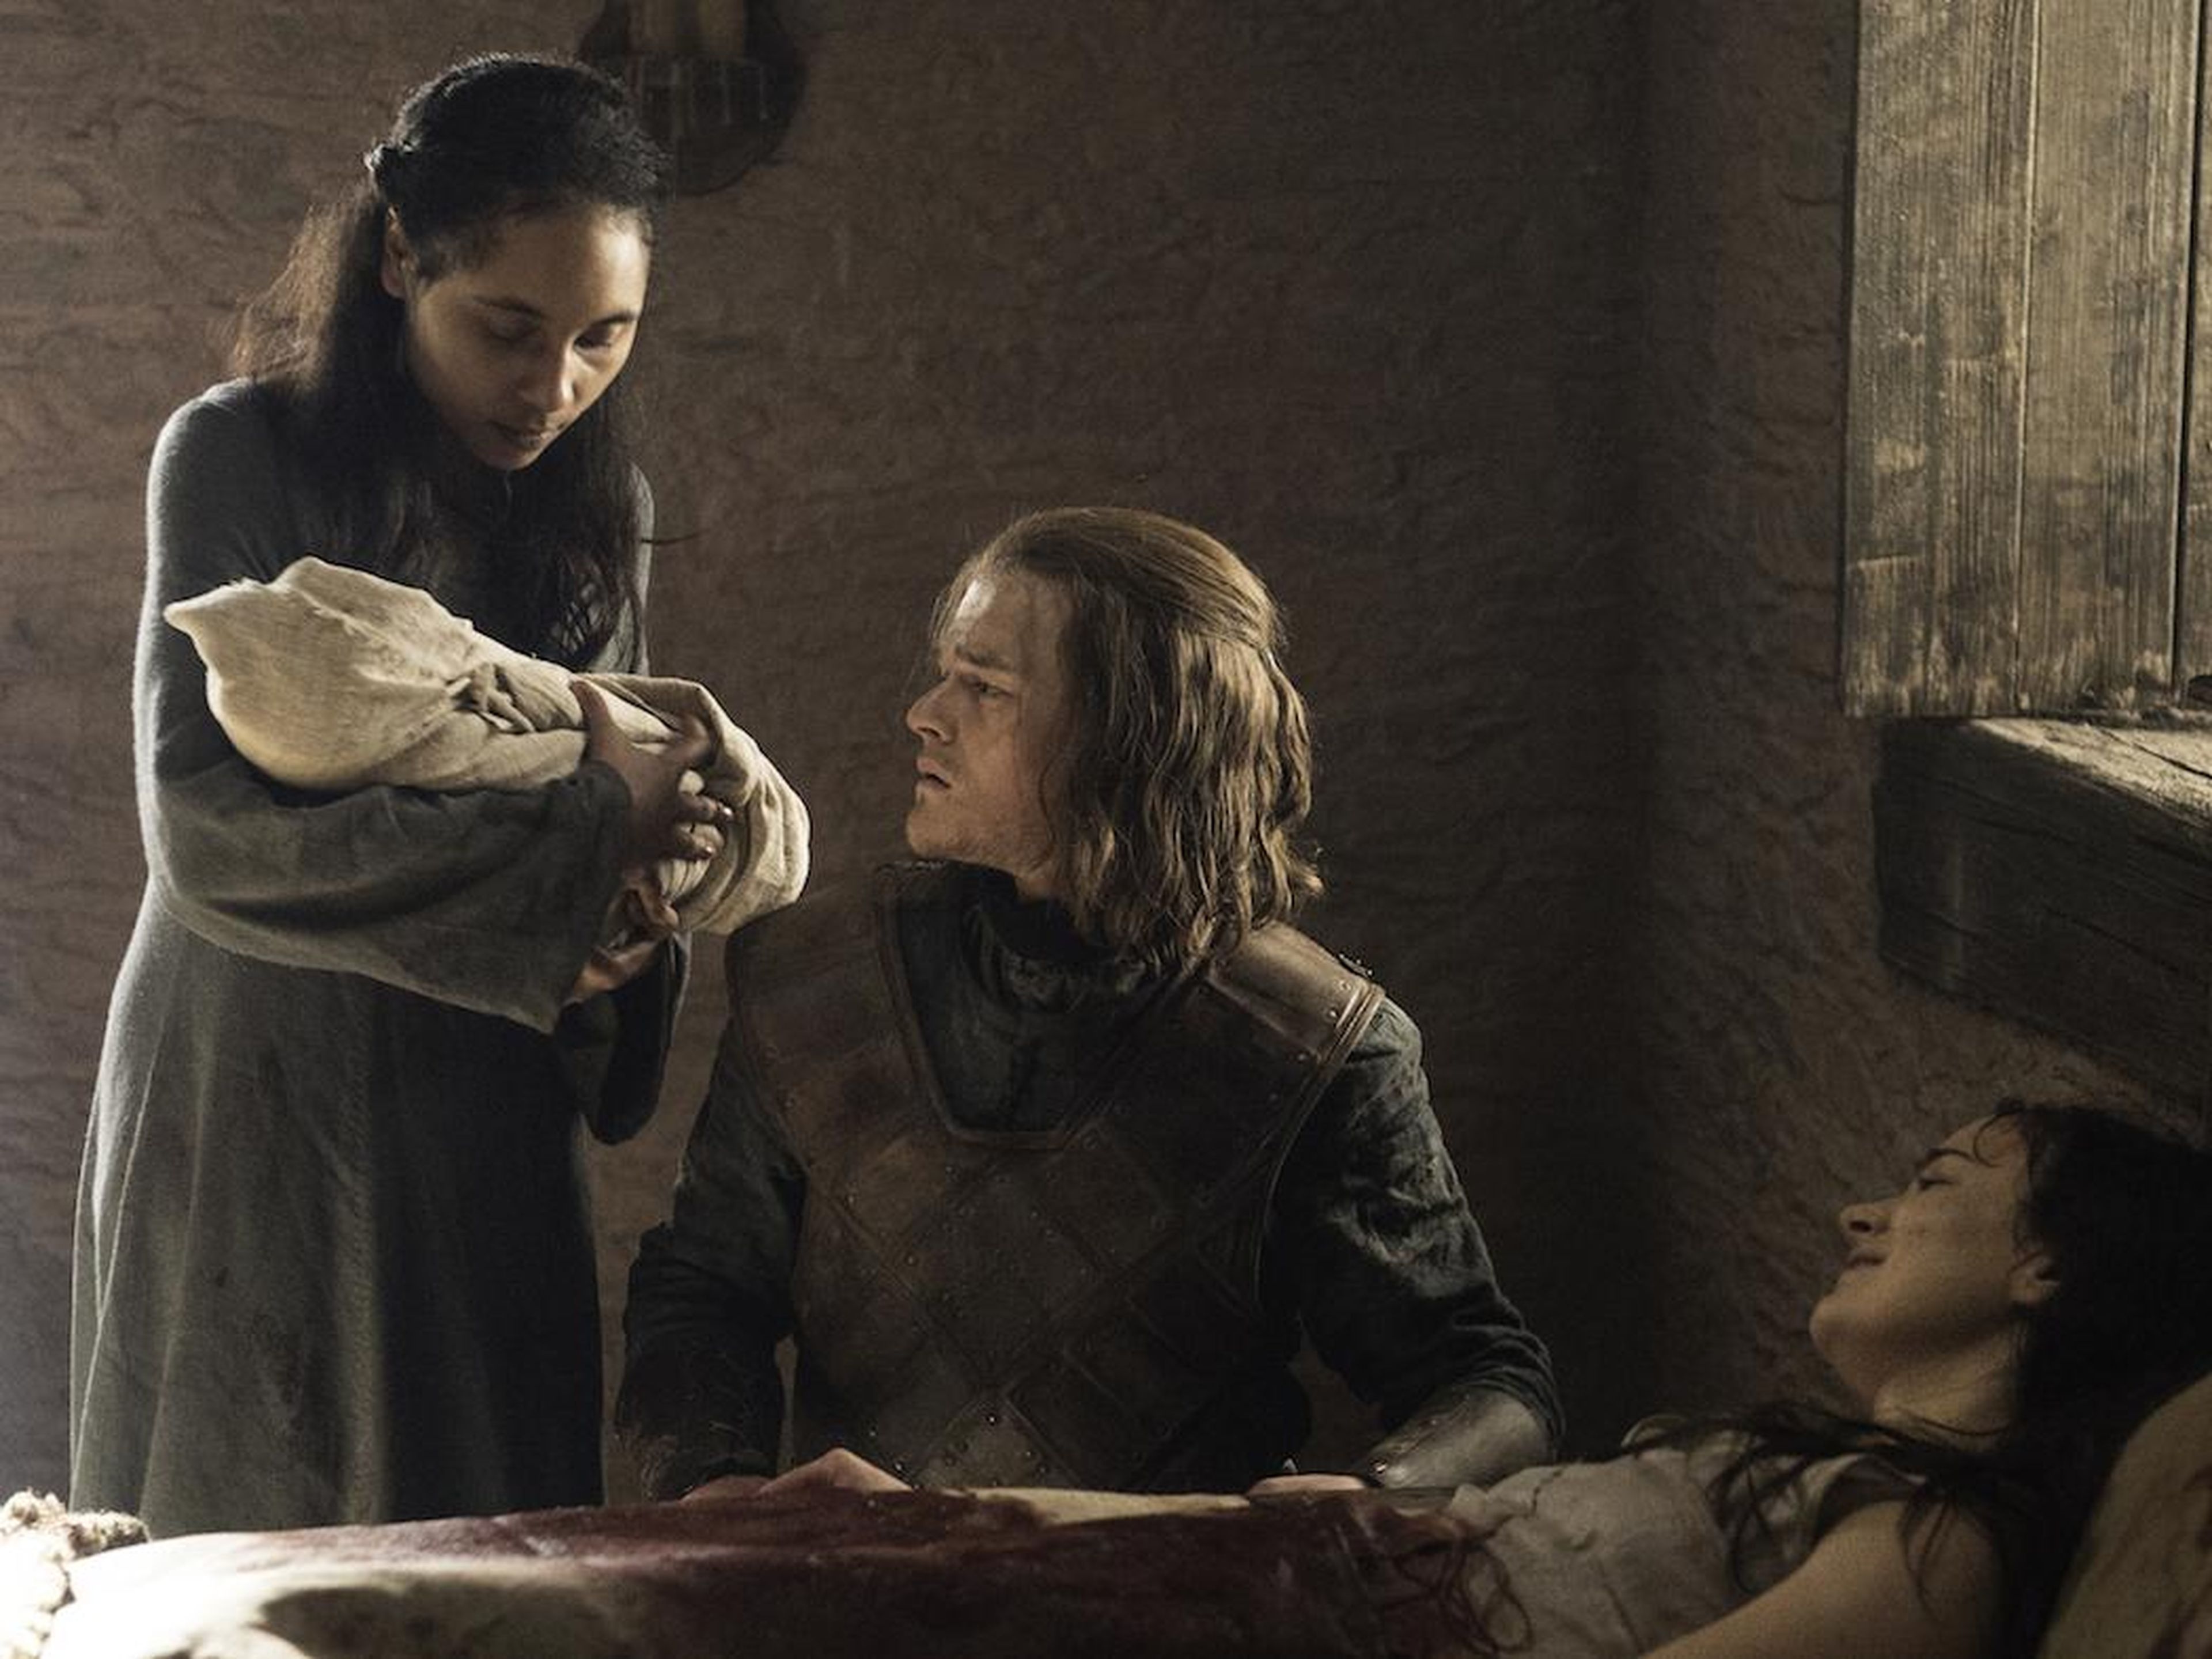 El joven Ned Stark conociendo al bebé Aegon por primera vez mientras Lyanna agonizaba.